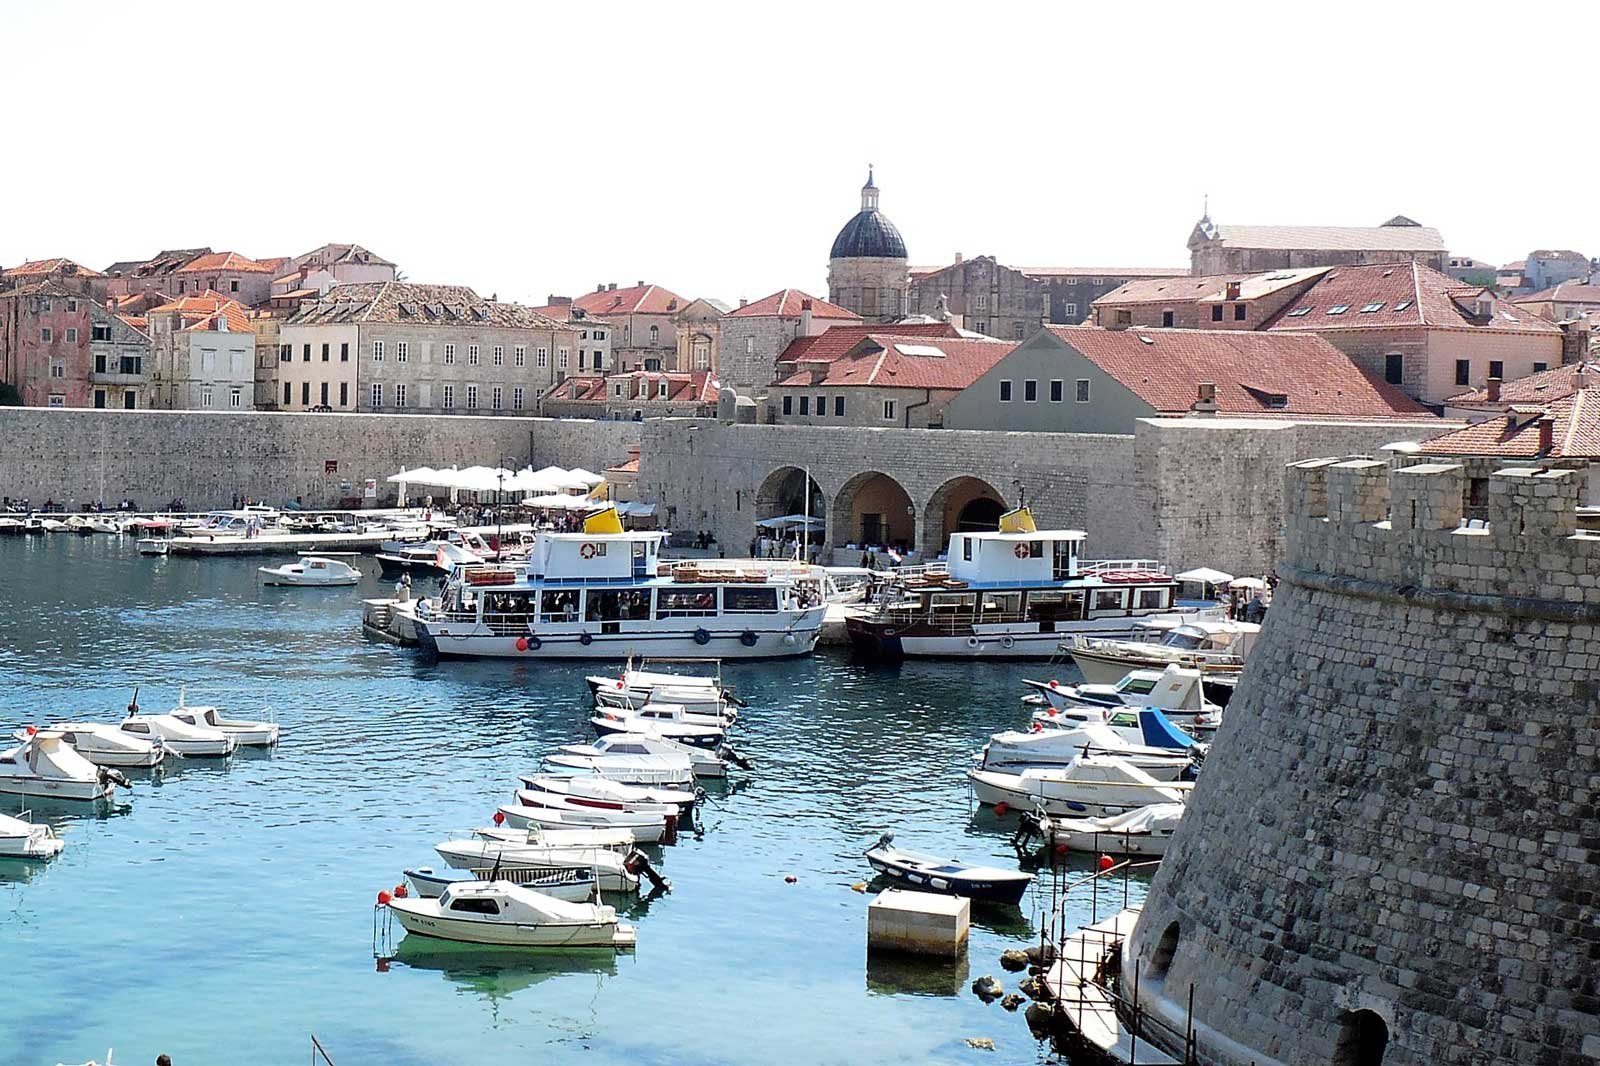 Old Port, Dubrovnik